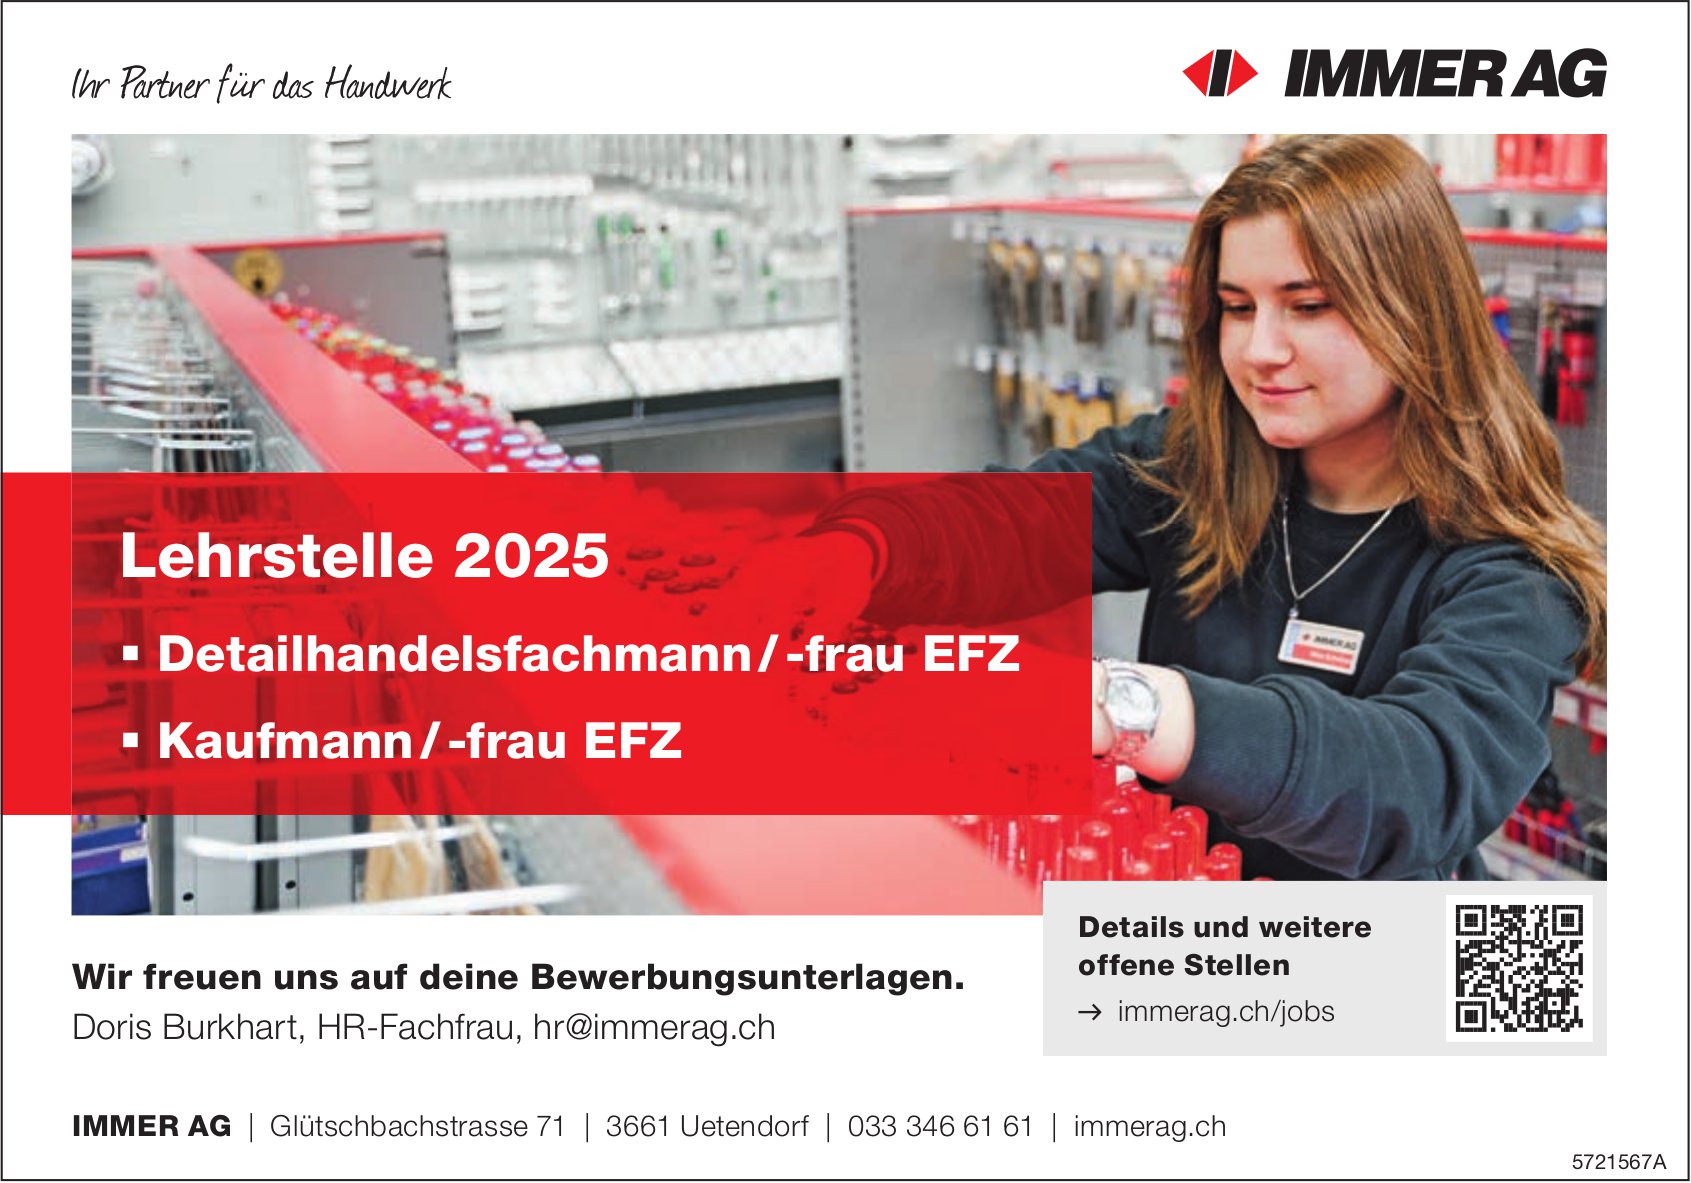 Lehrstelle 2025 Deteilhandelsfachmann/-frau EFZ & Kaufmann/-frau EFZ, Immer AG, Uetendorf, zu vergeben